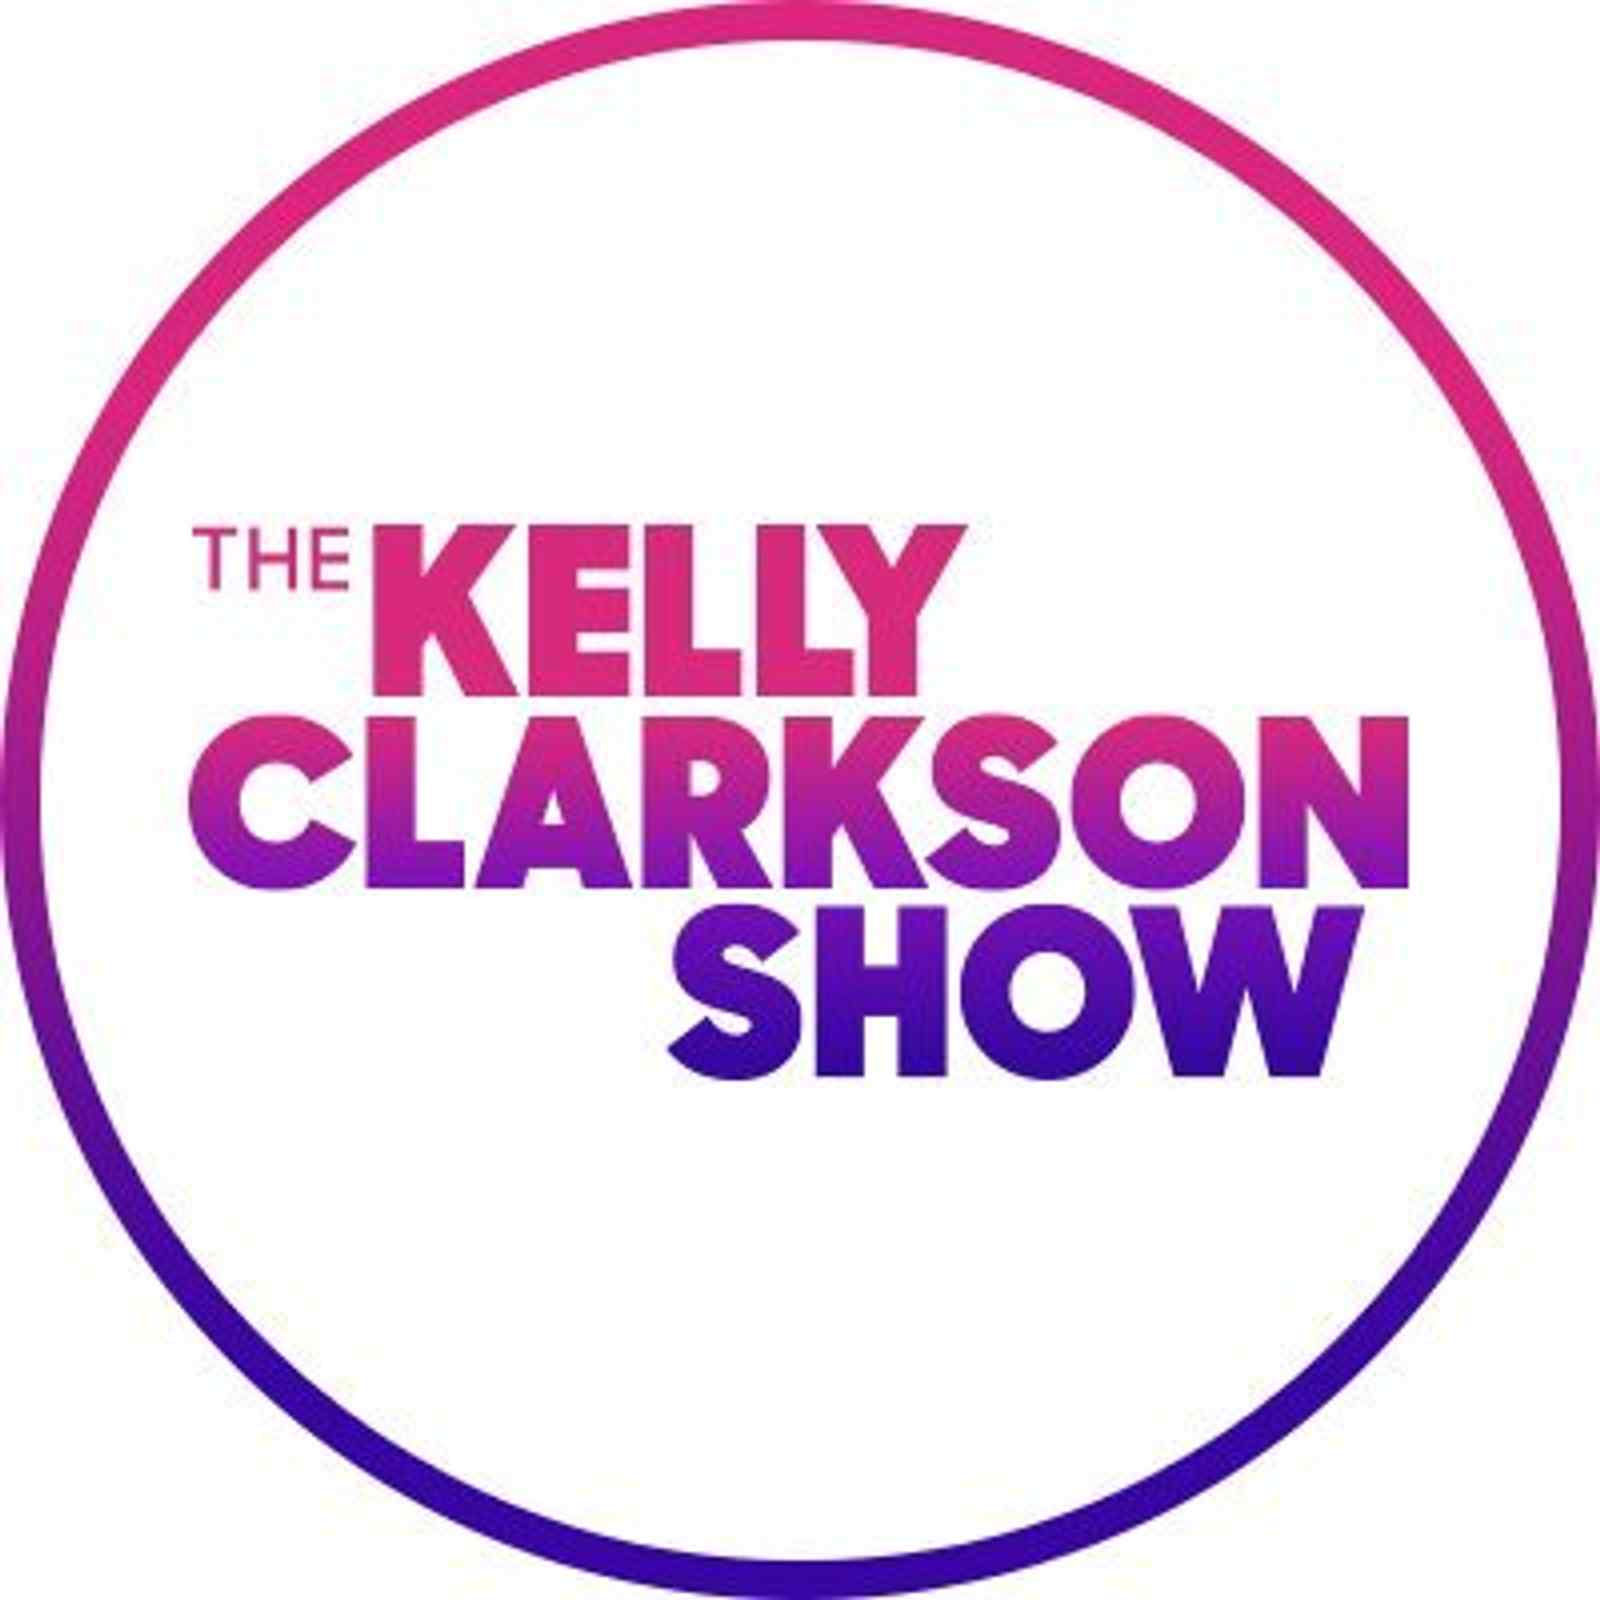 The Kelly Clarkson Show: Matt Stell